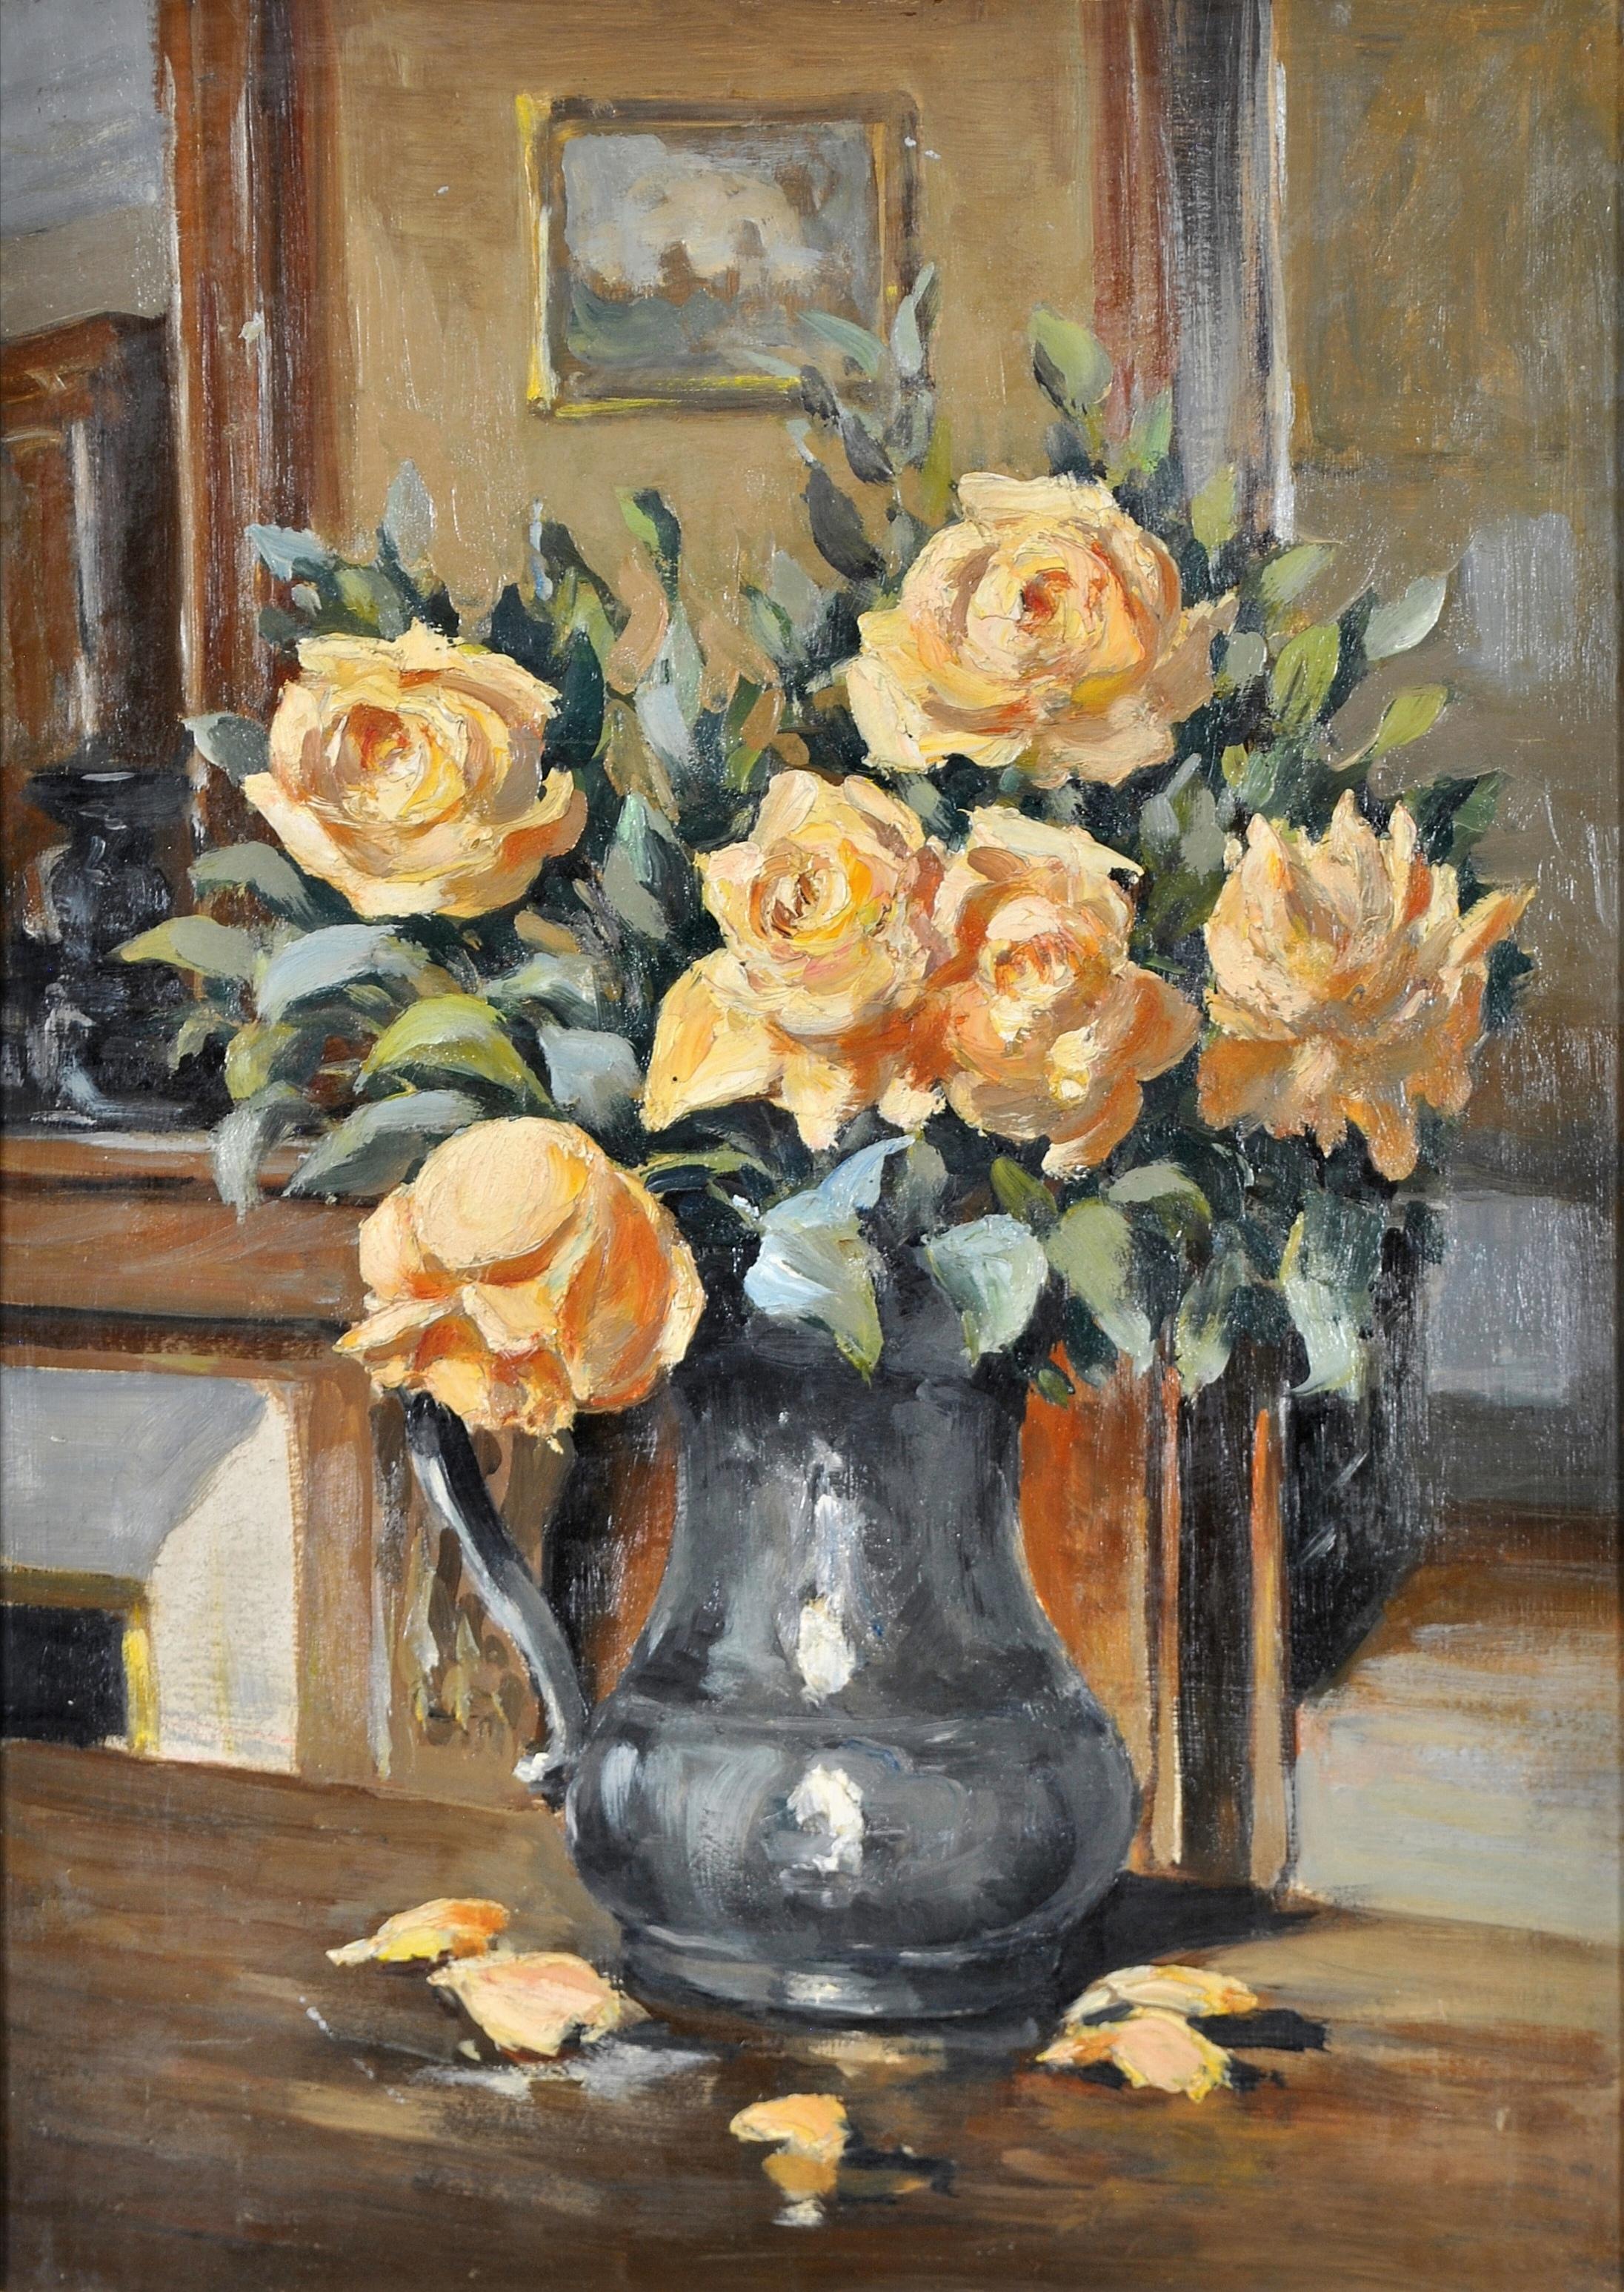 Rosen in einem Krug - 1920er Jahre Französisch Impressionist Antike Stillleben Ölgemälde – Painting von Early 20th Century French School